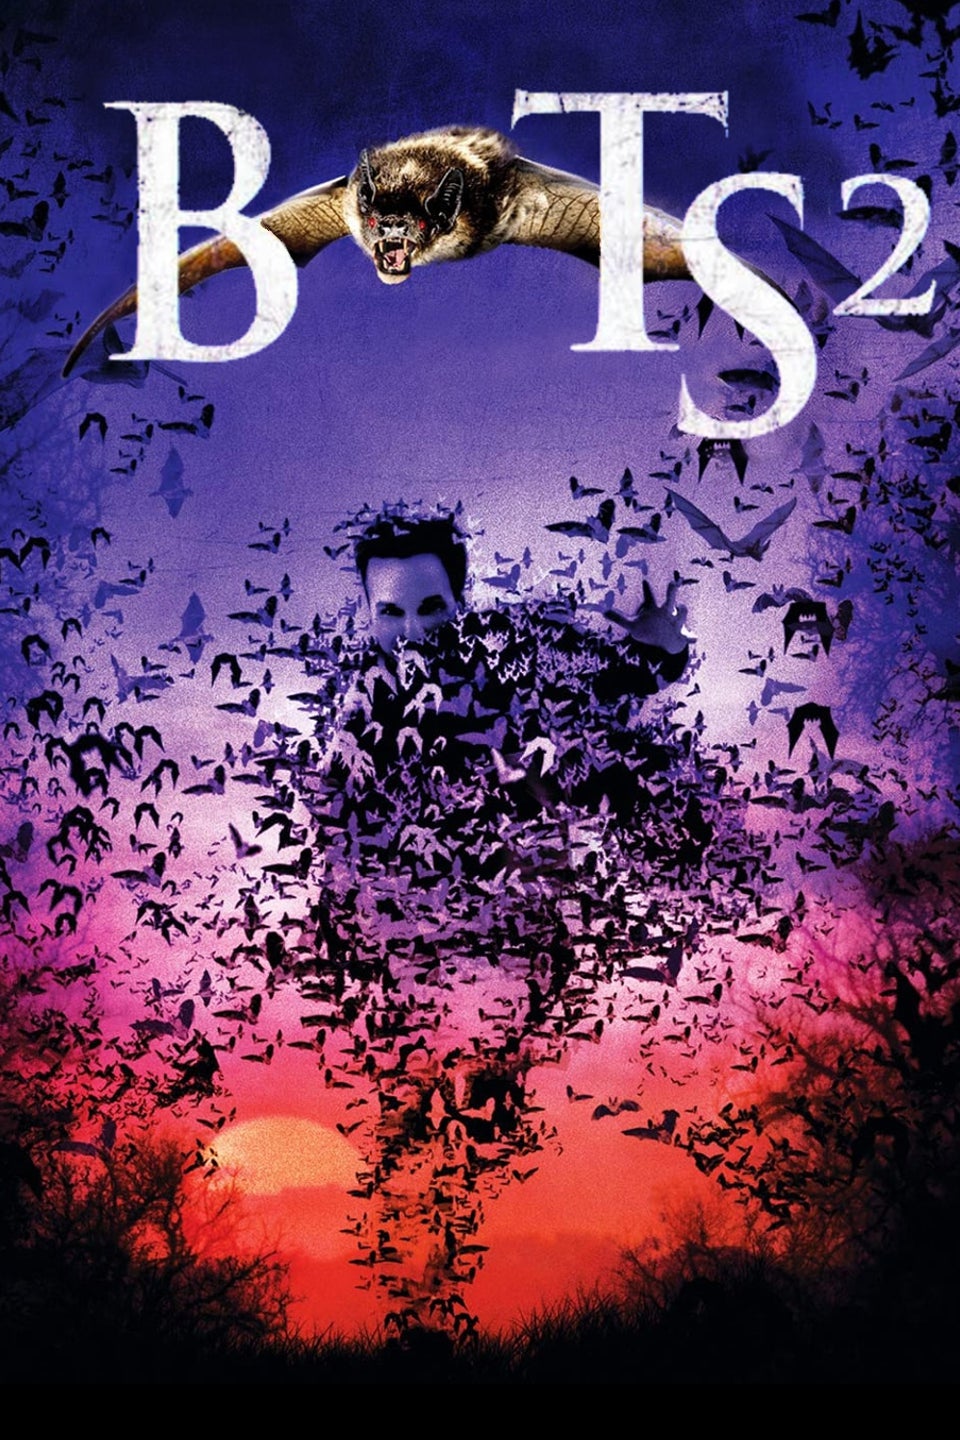 Bats 2 (2007)